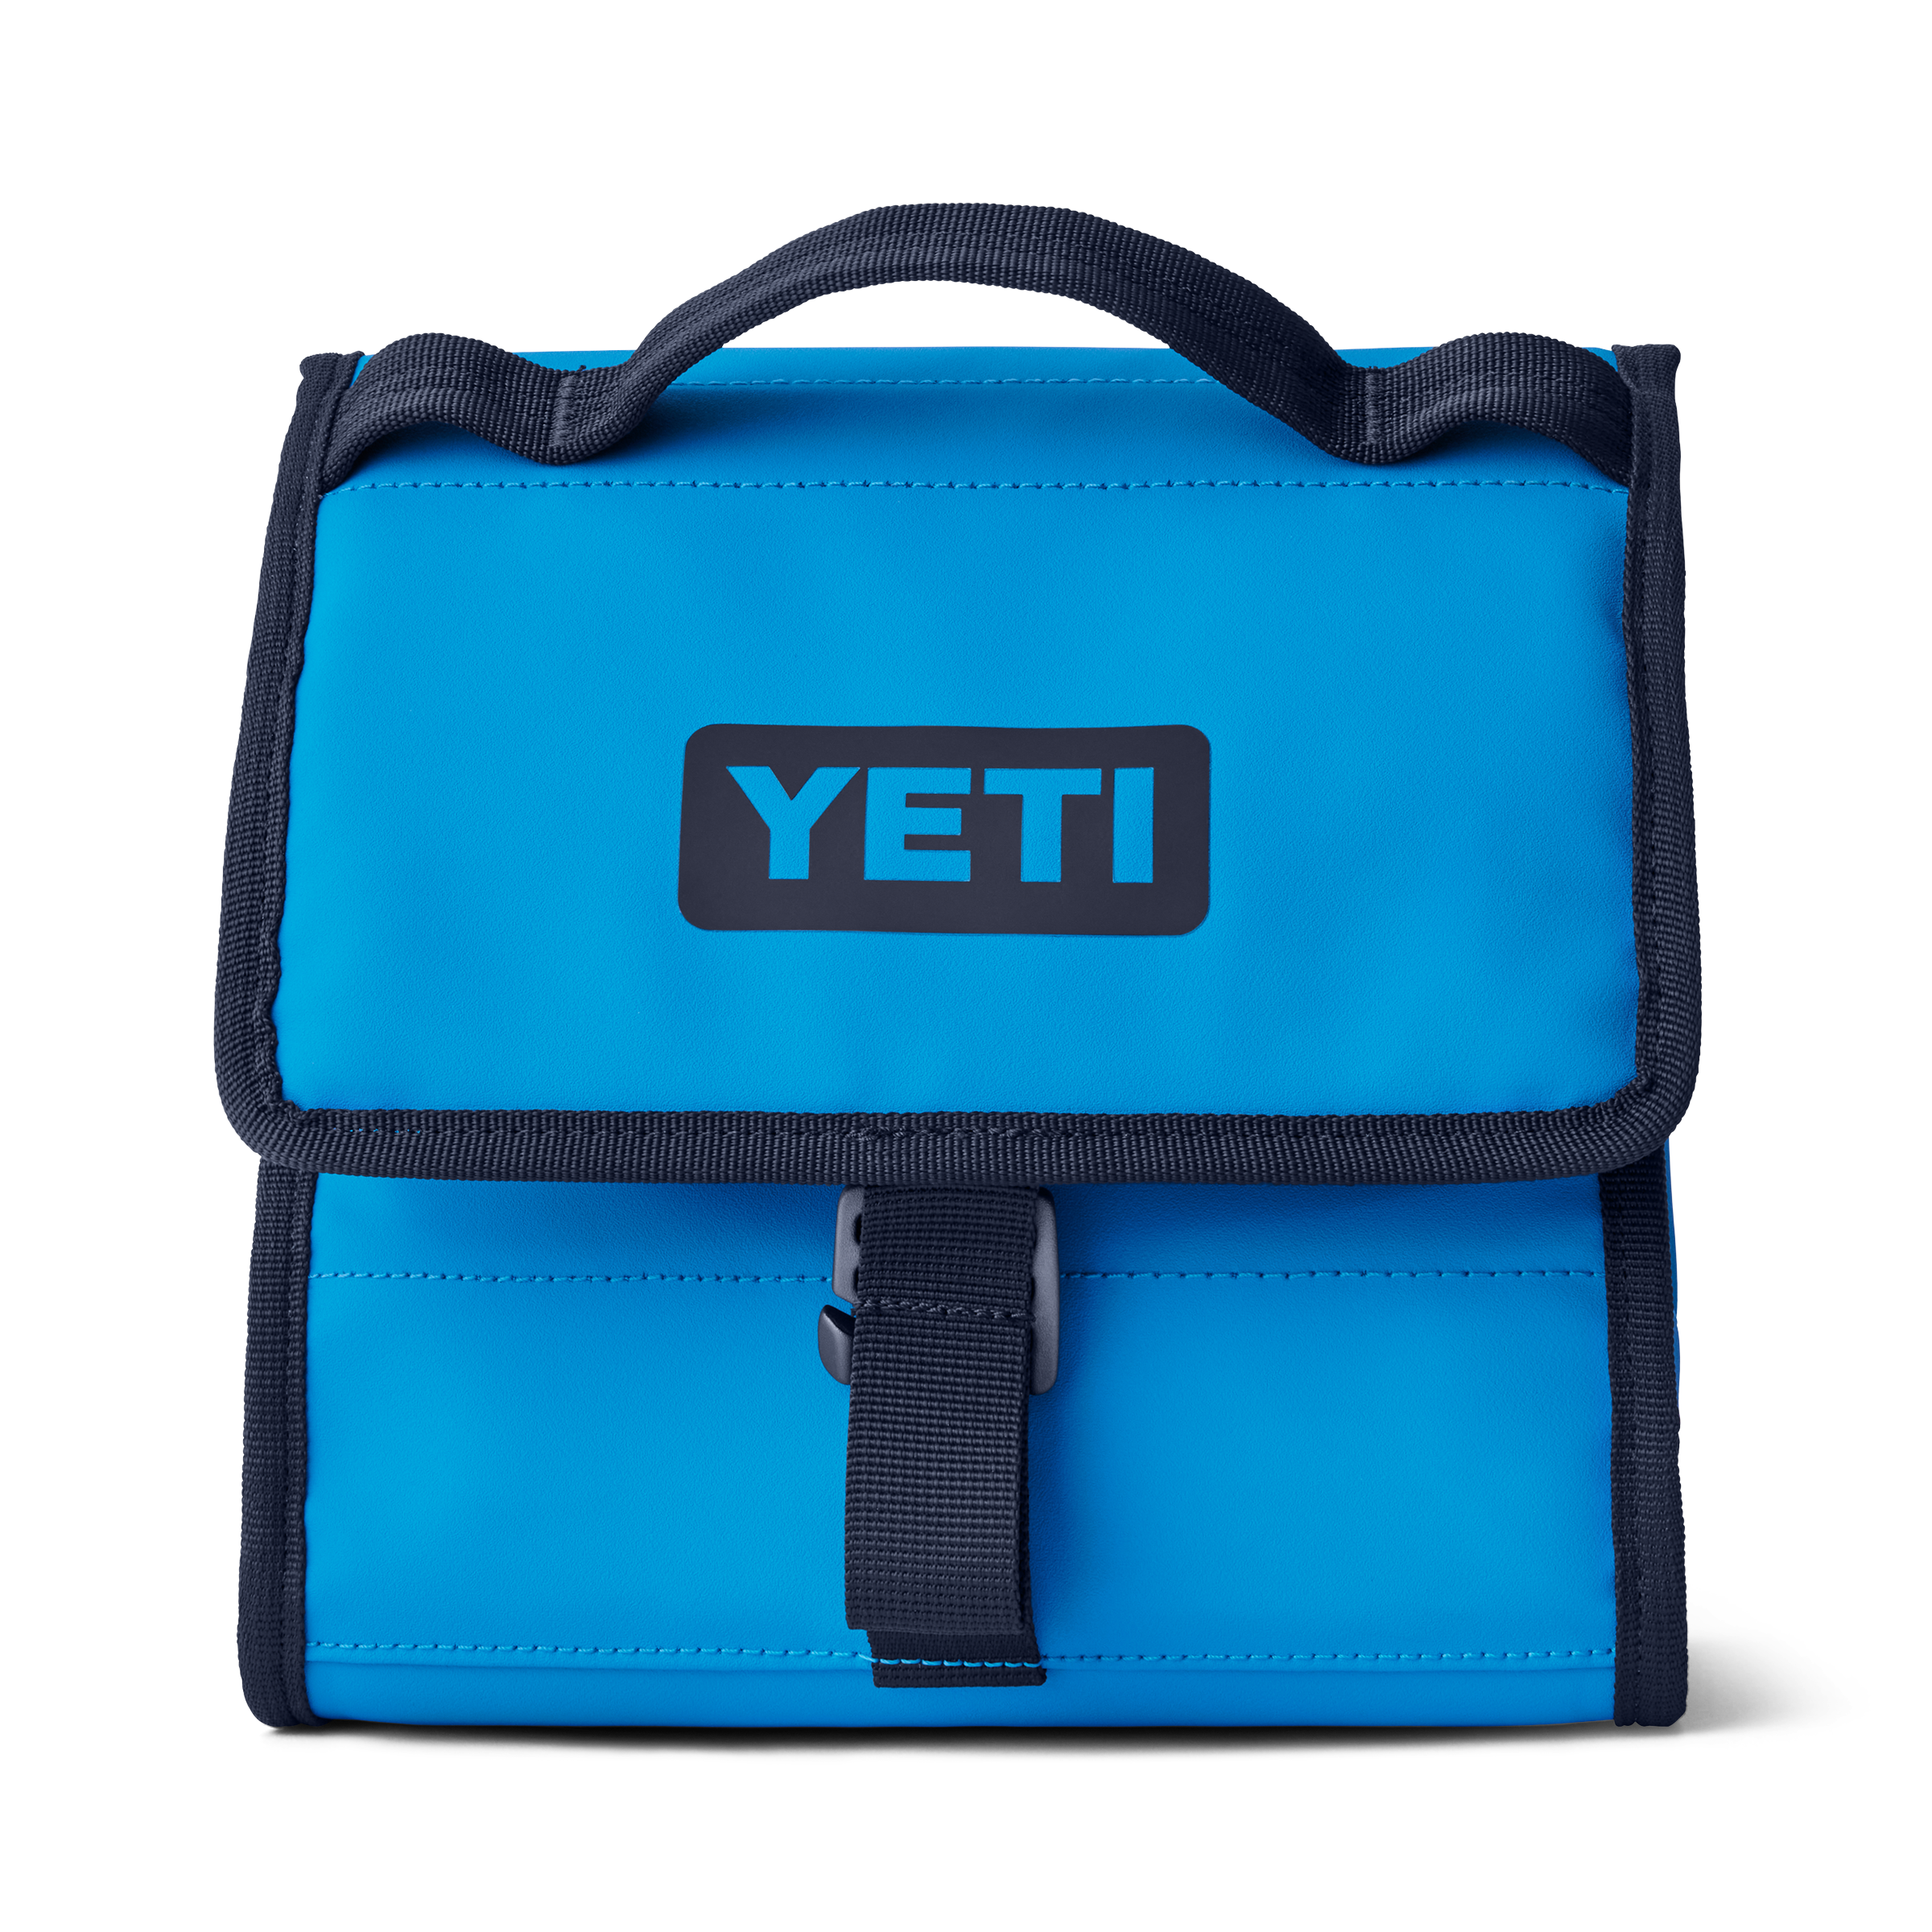 YETI DayTrip® Lunch Bag Big Wave Blue